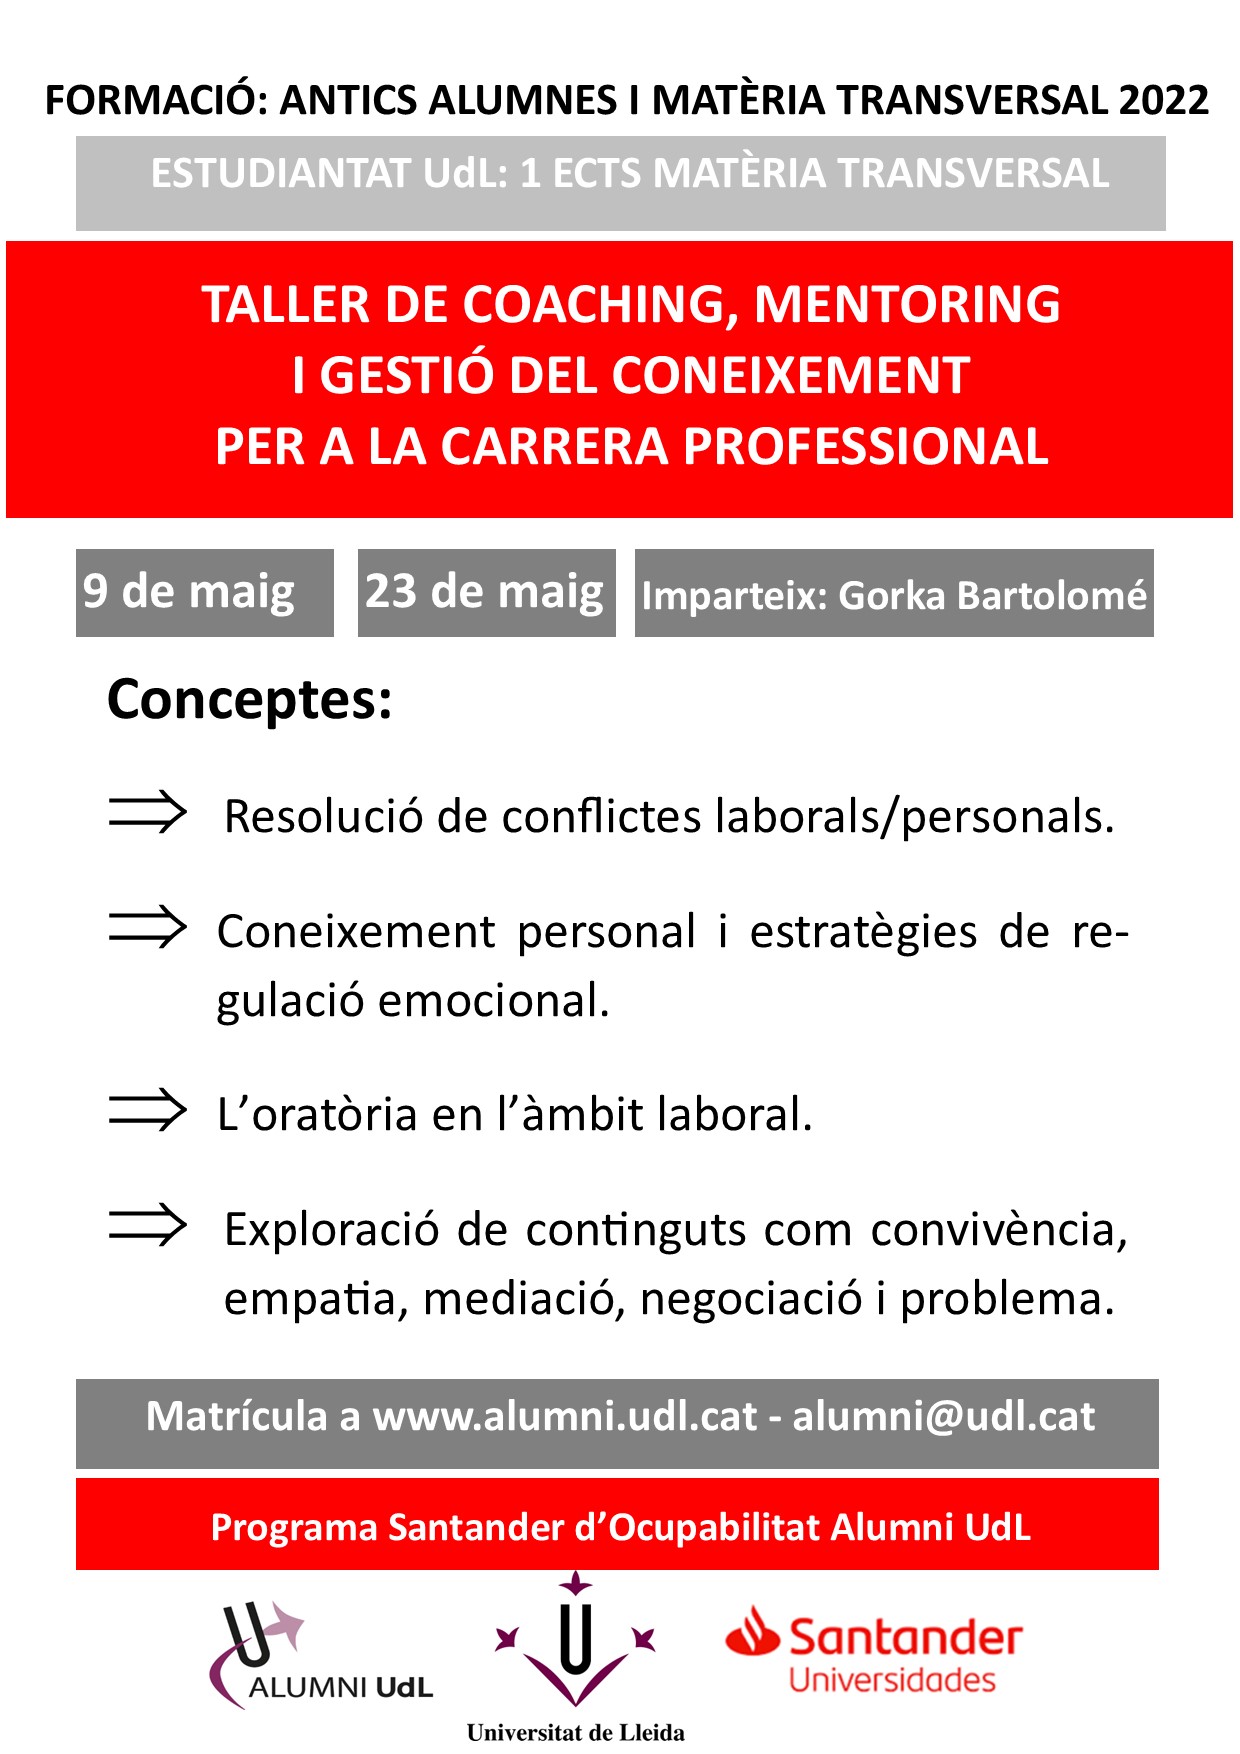 Taller de coaching, mentoring i gestió del coneixement per la vida universitària i la carrera professional